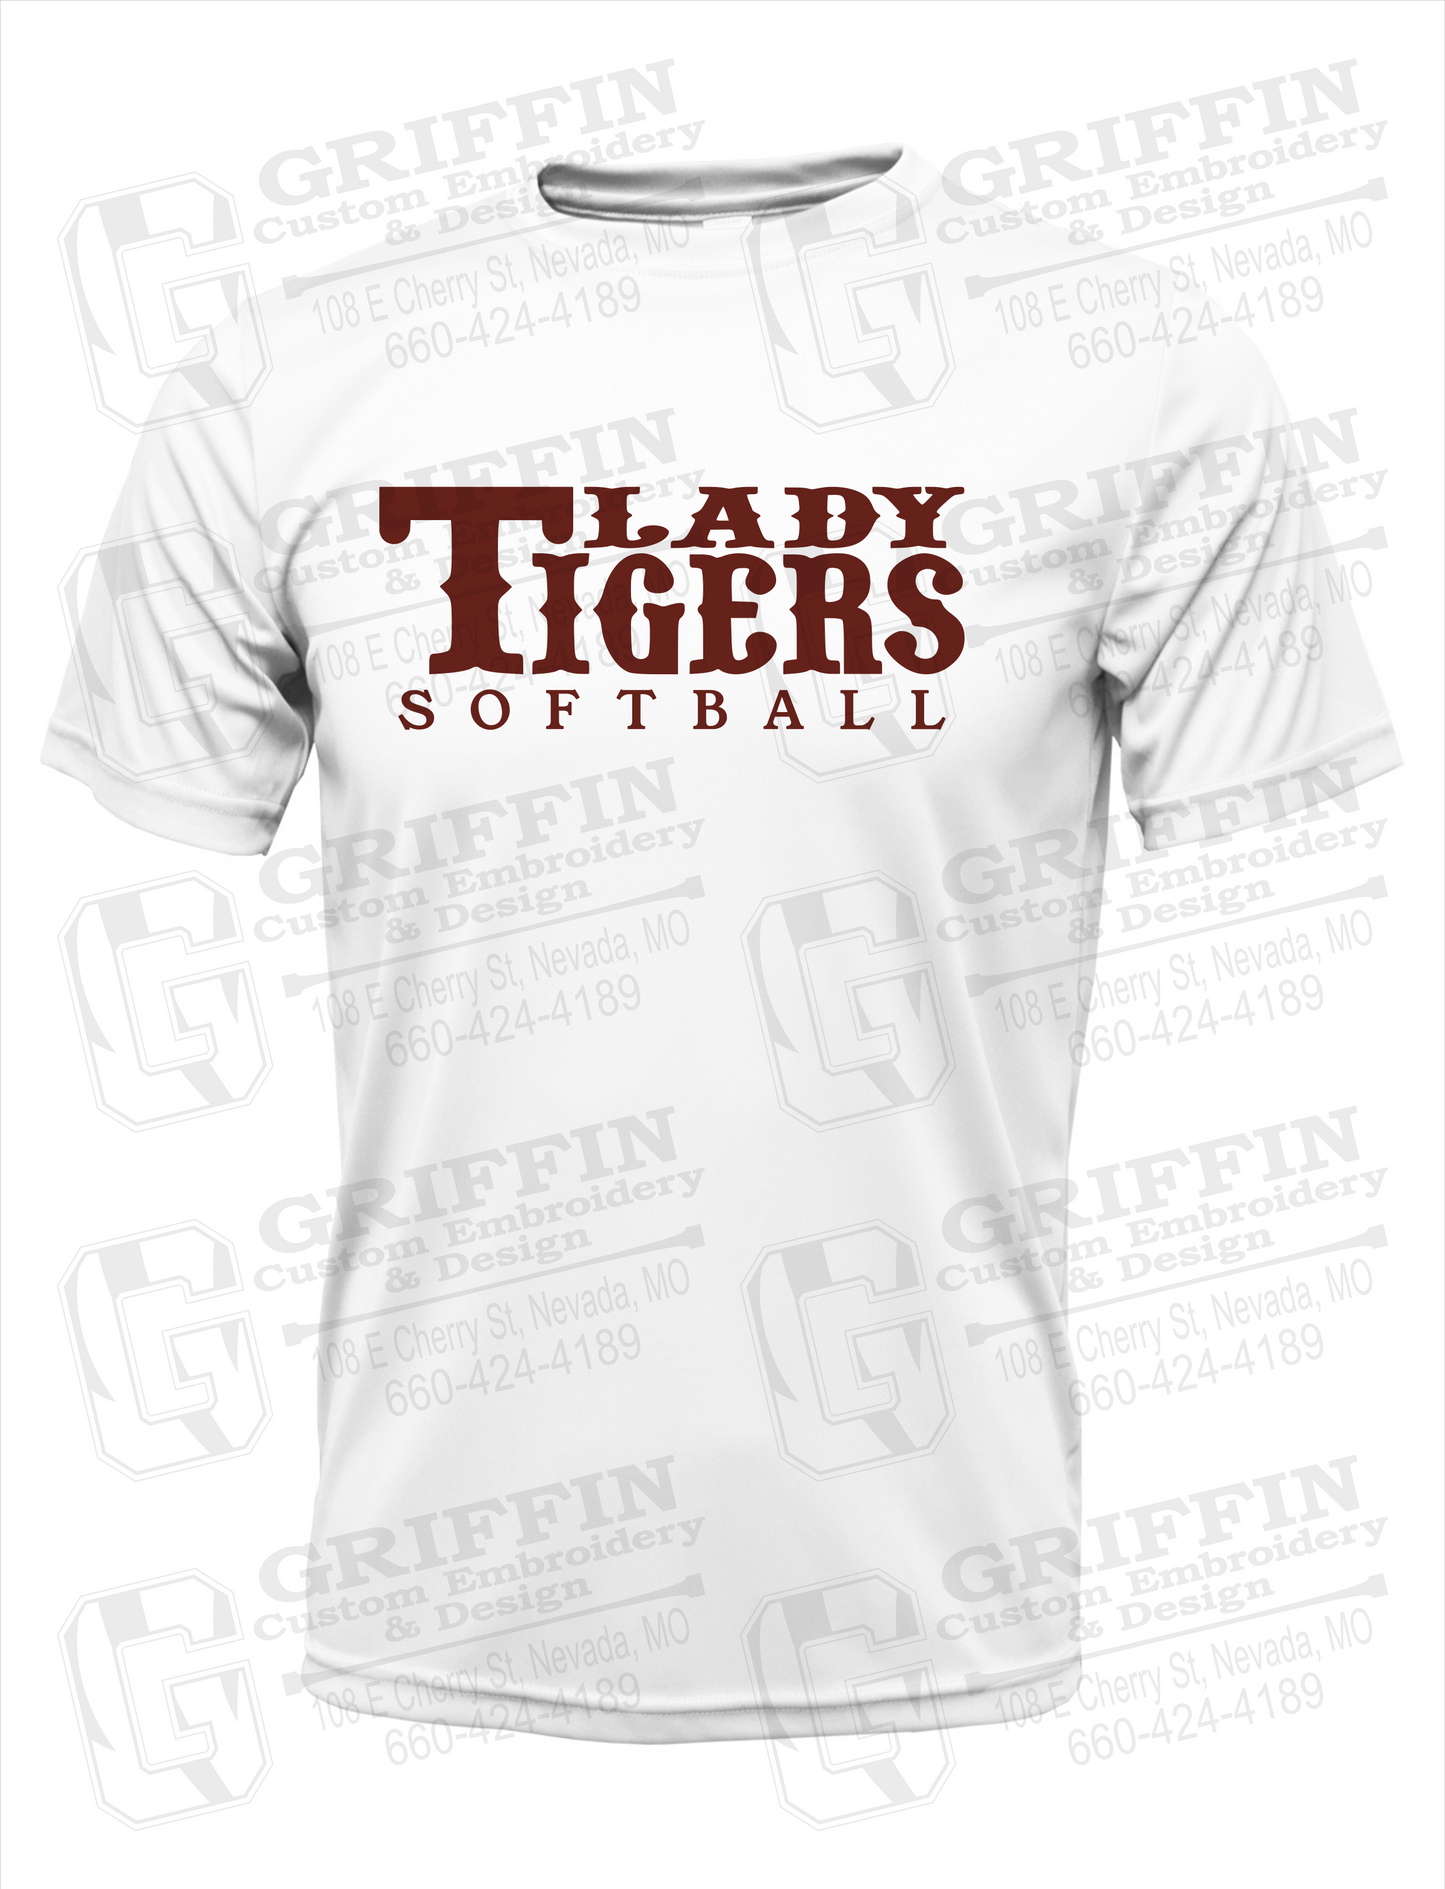 Nevada Tigers 24-F Dry-Fit T-Shirt - Softball